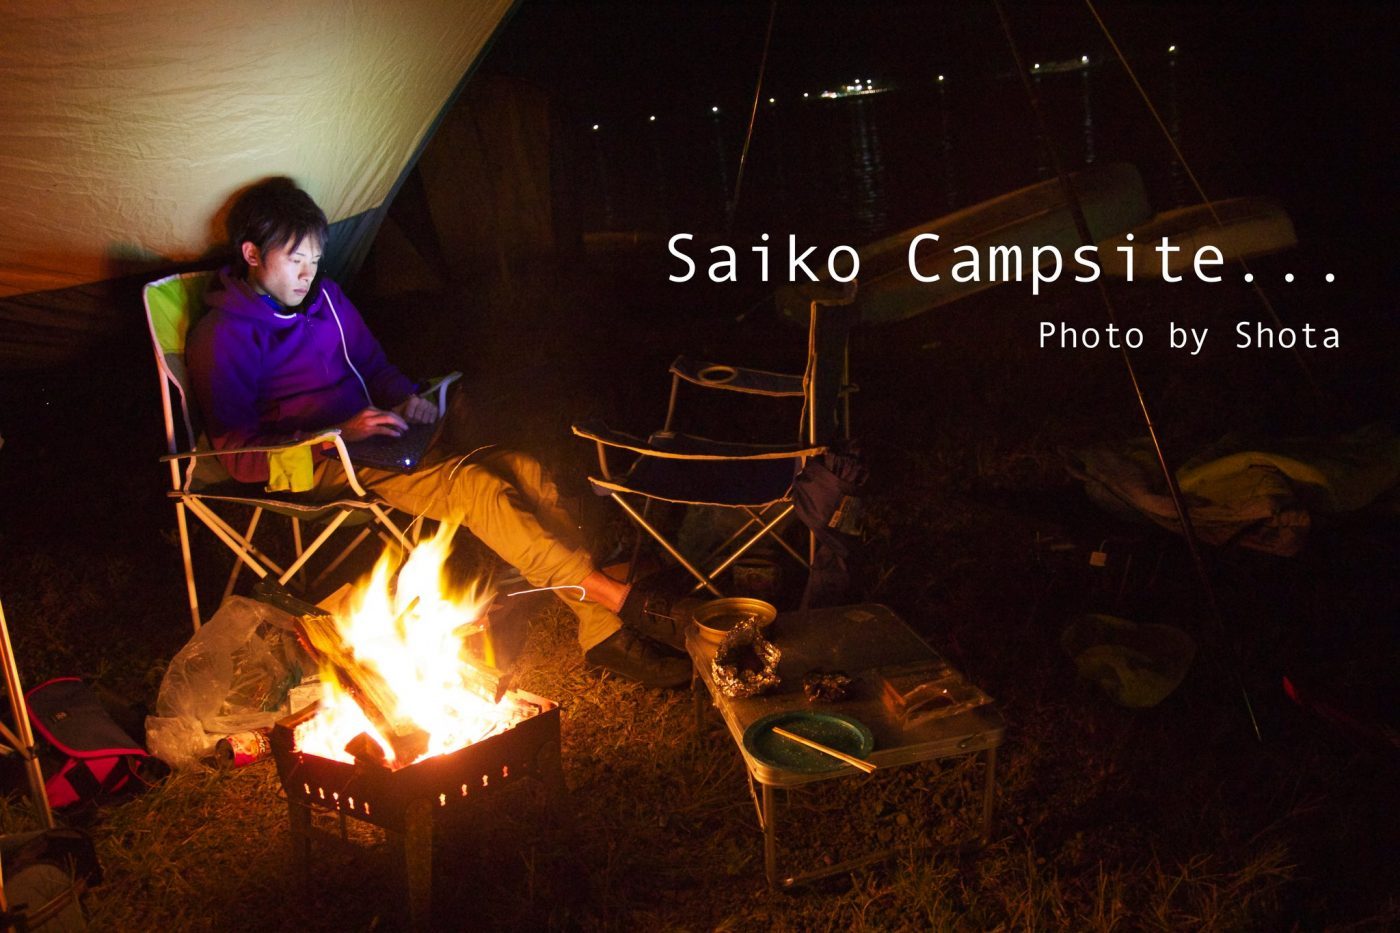 意味もなくさらす キャンプ初心者だった頃の僕らを無駄にさらしてみます キャンプ初心者向け総合情報ブログ Hyper Camp Creators